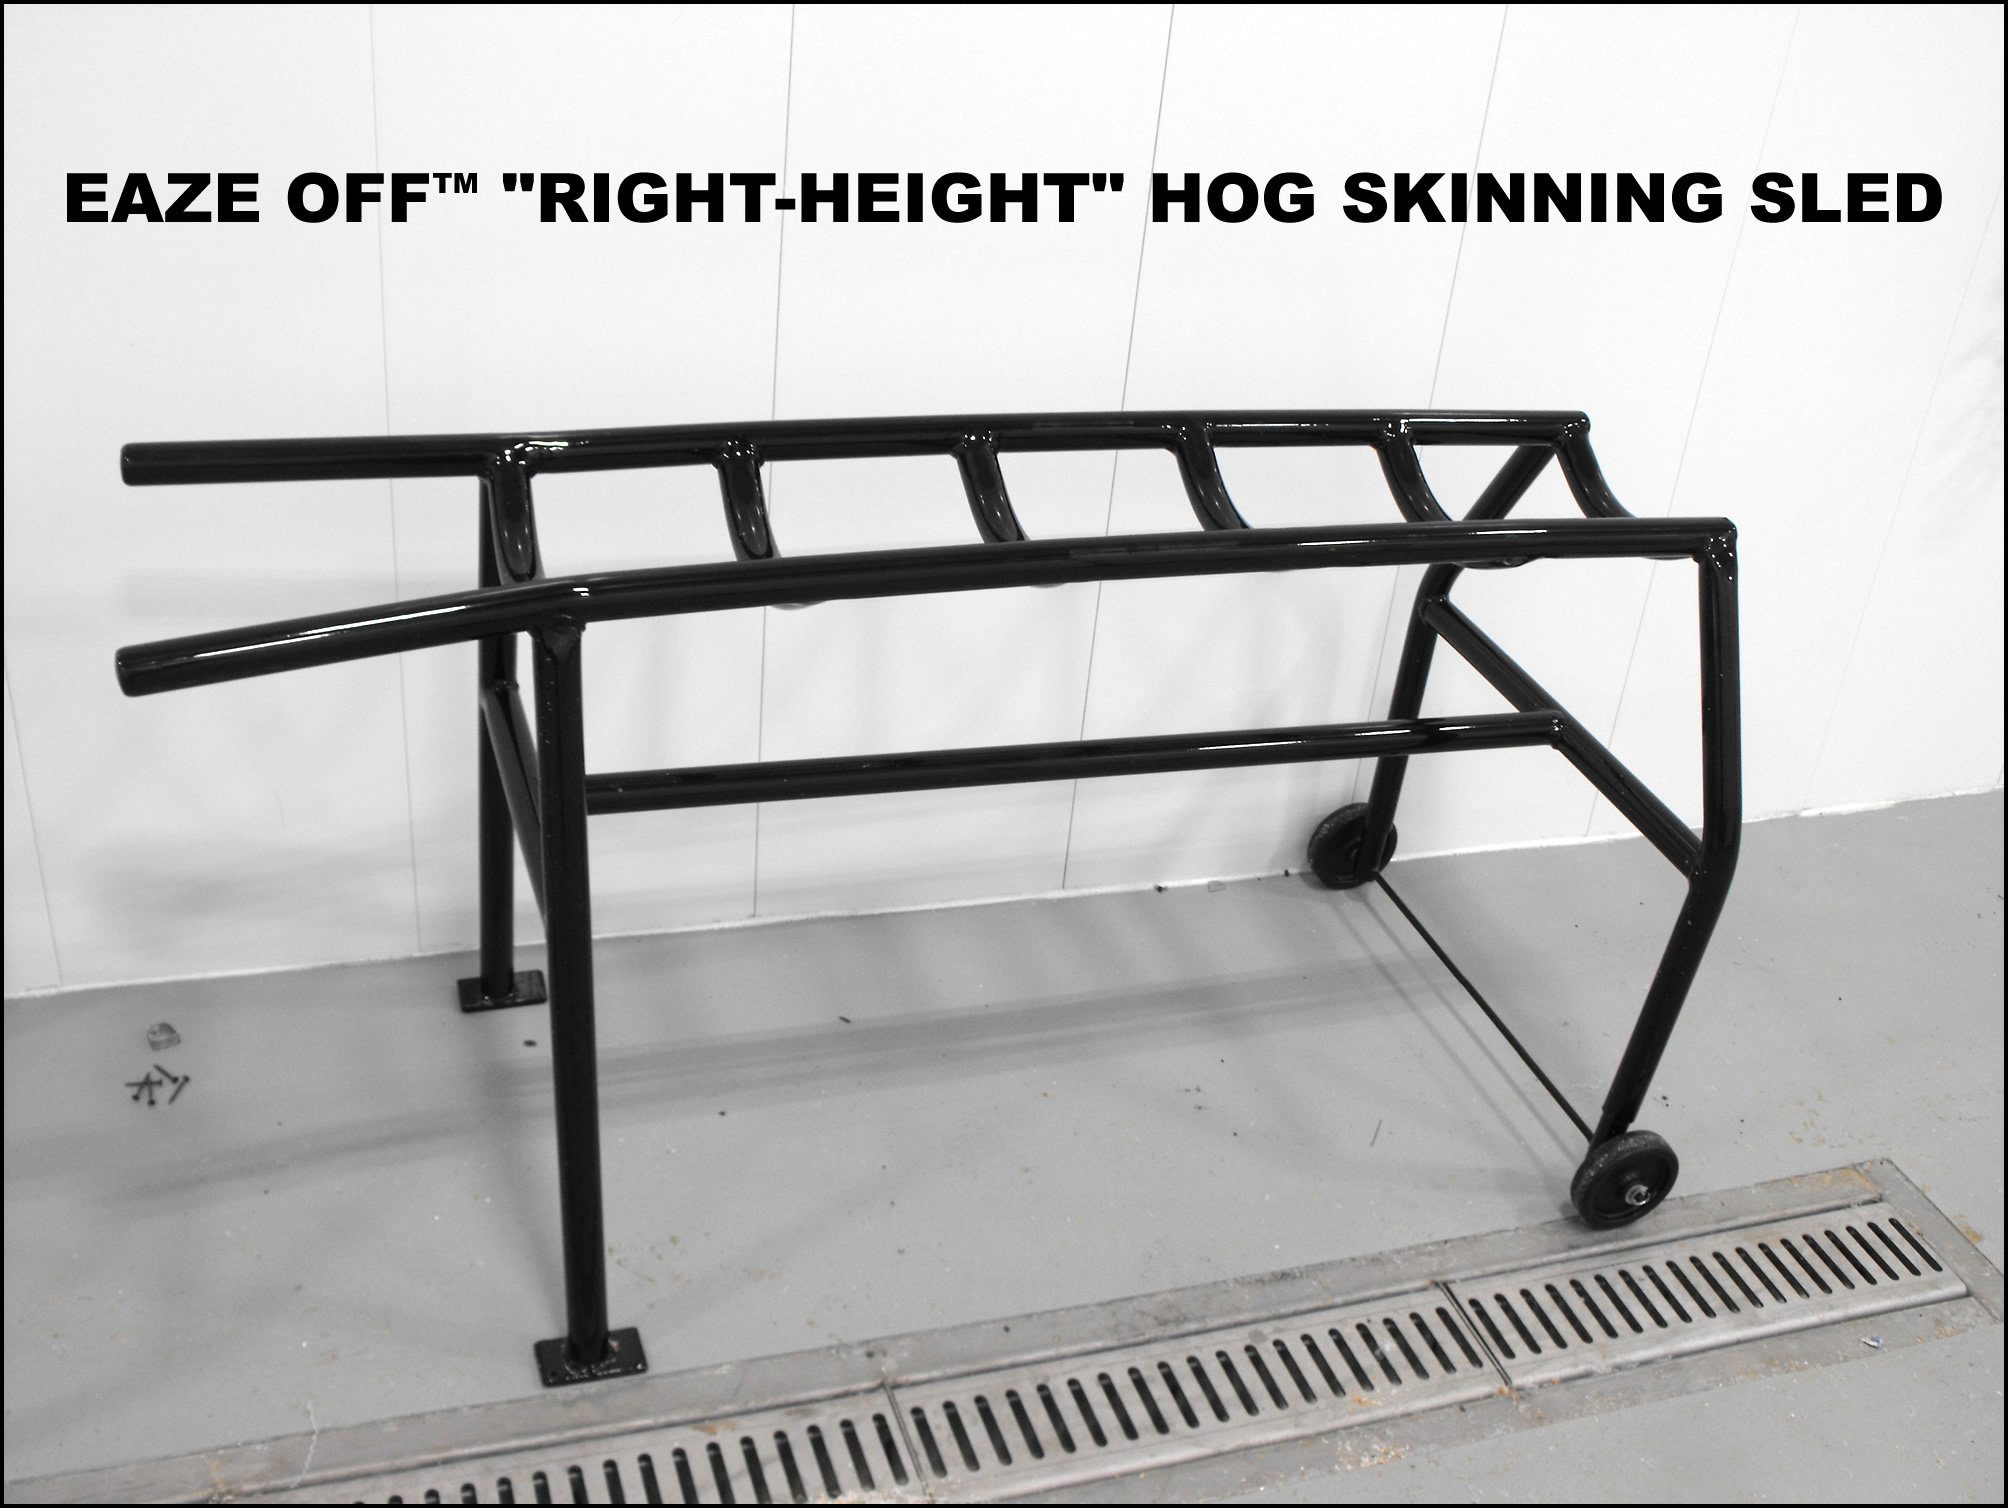 EAZE OFF 'Right-Height' Hog Skinning Sled